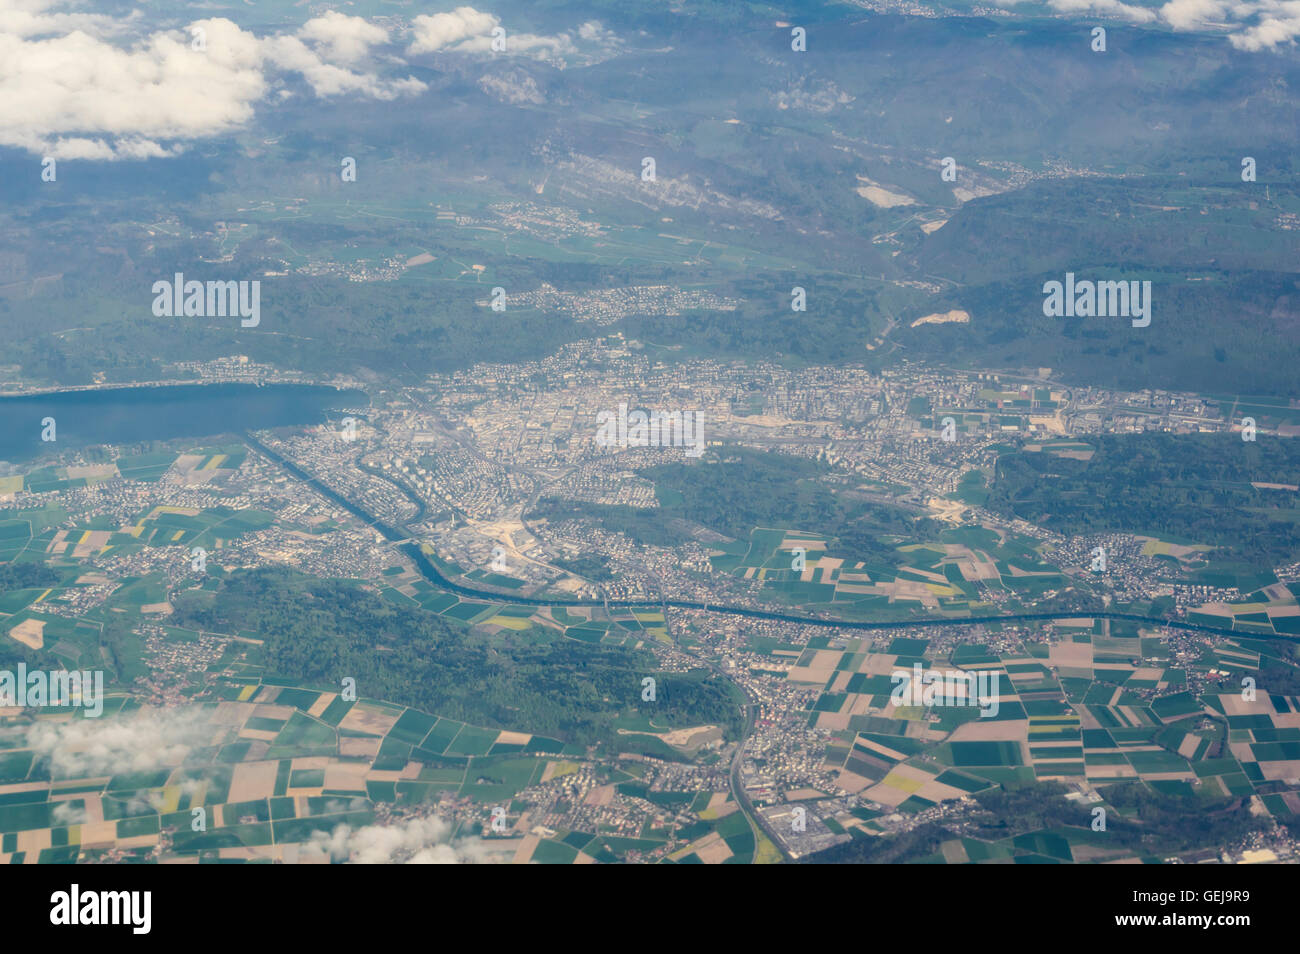 La fotografía aérea de la ciudad suiza de Biel/Bienne, tomada en dirección norte. Foto de stock